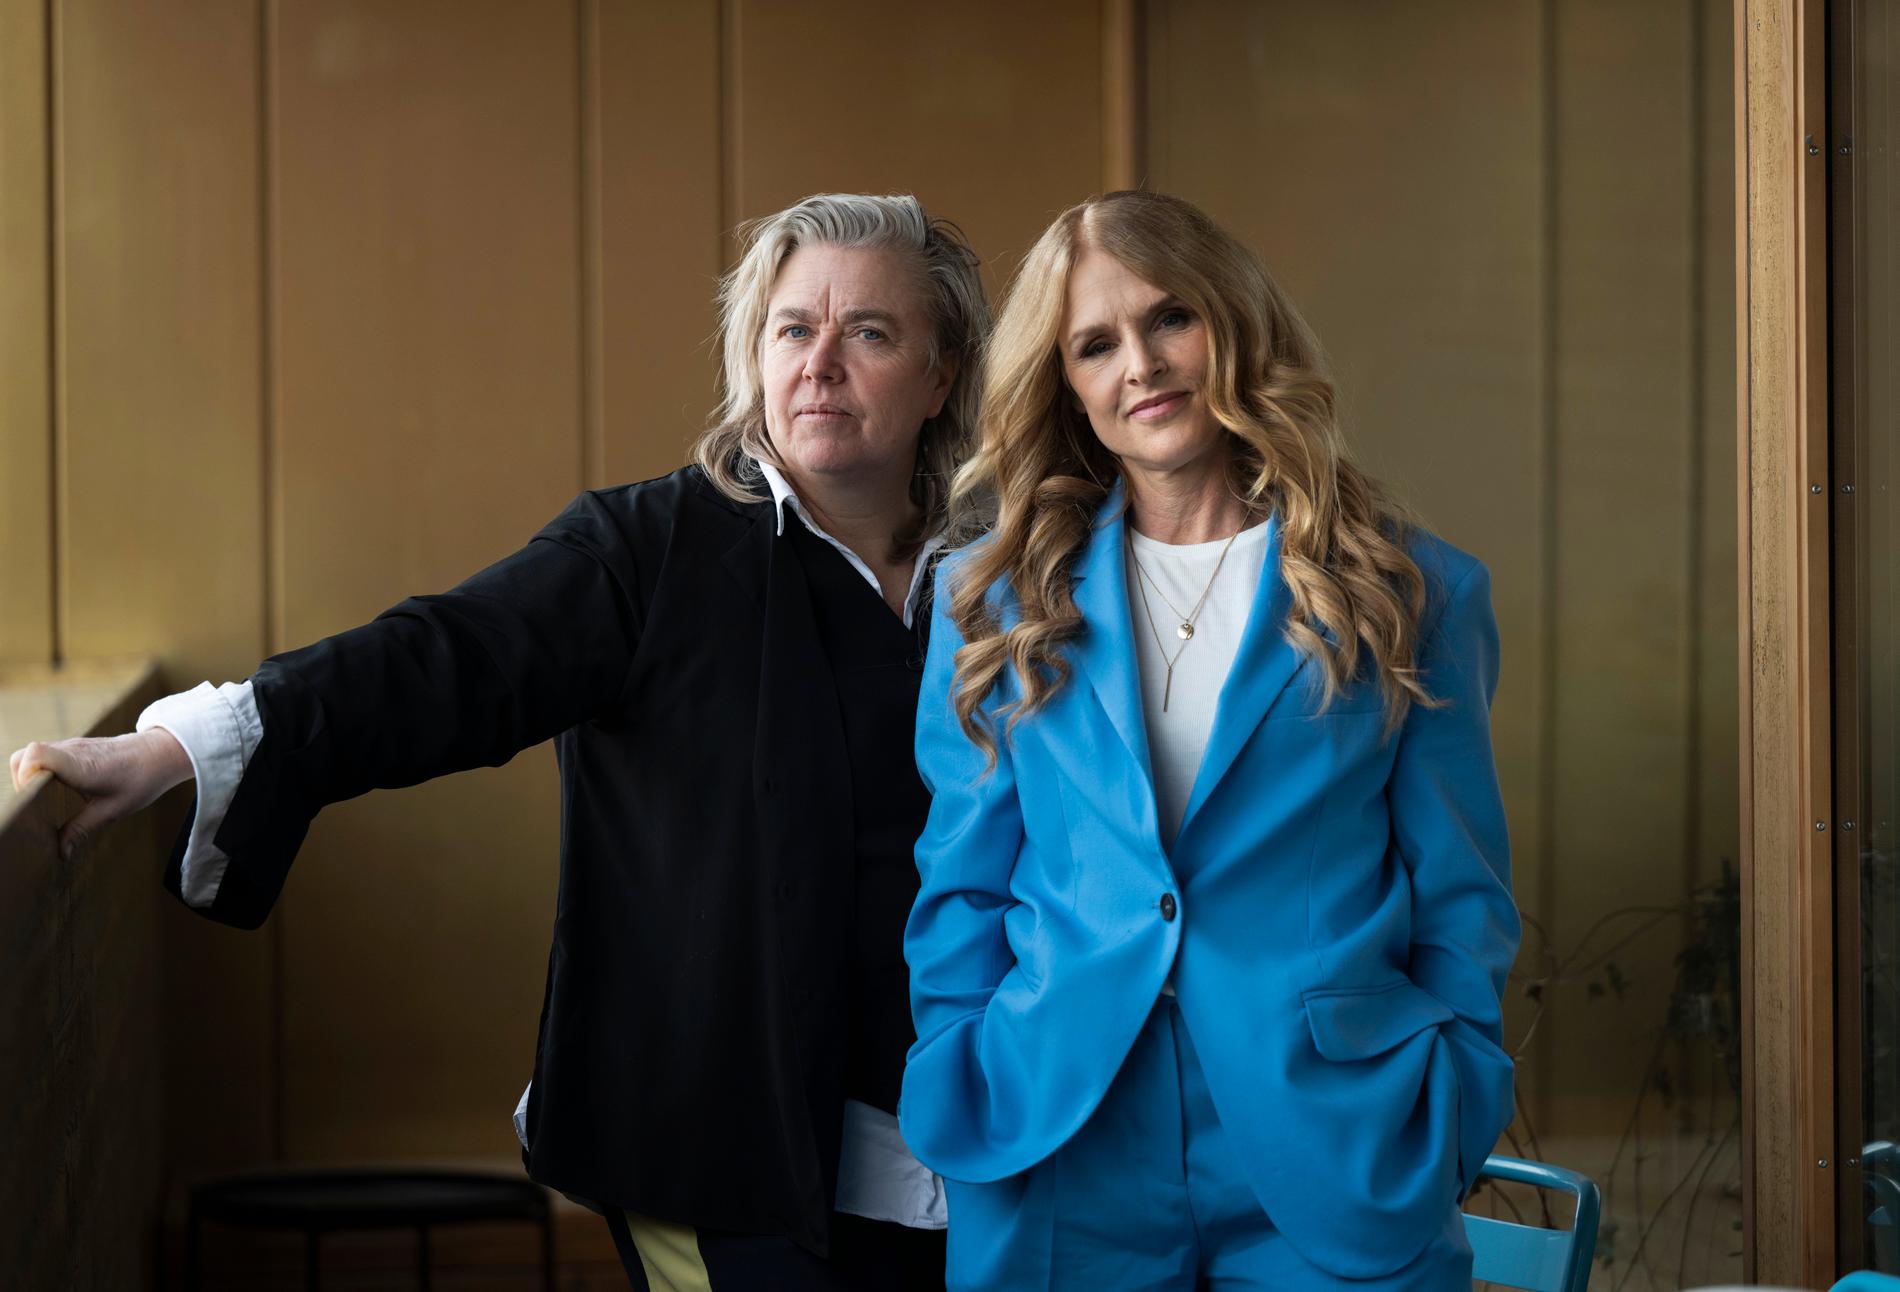 Producent Stina Gardell och regissör Karin af Klintberg fotograferade inför premiären av deras film "Kungen" om kung Carl XVI Gustaf.